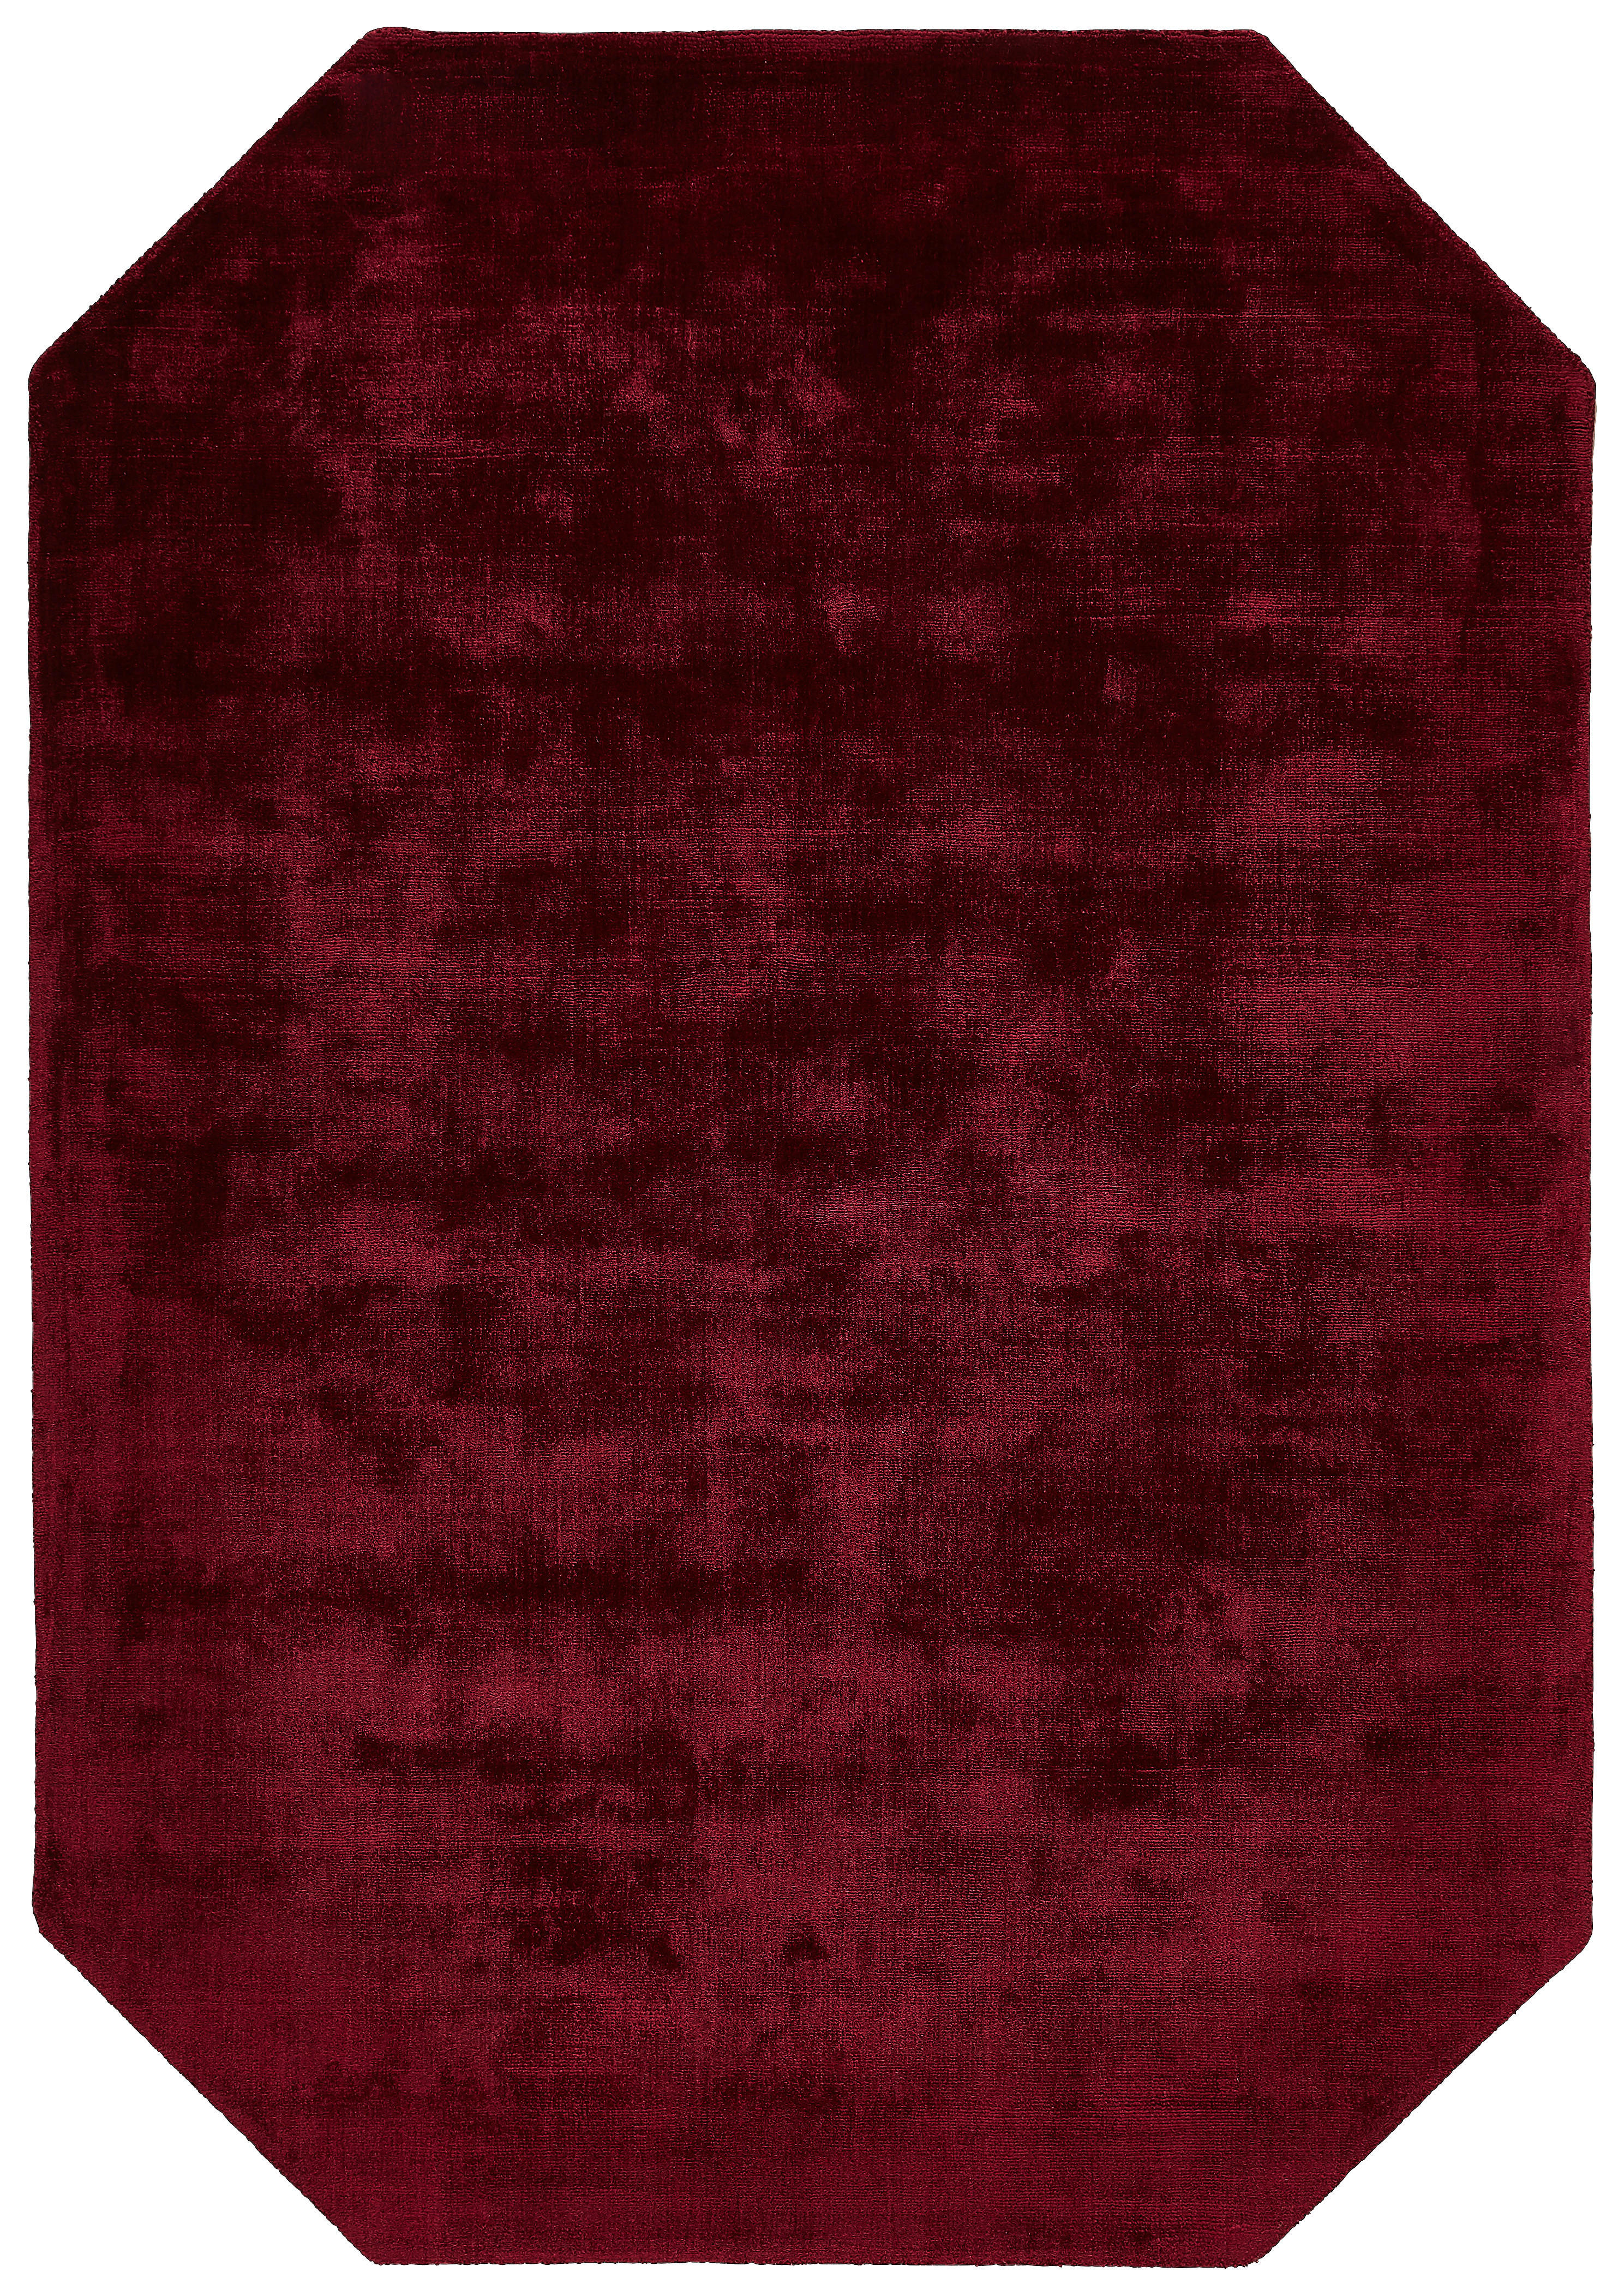 WEBTEPPICH  120/180 cm  Bordeaux   - Bordeaux, Design, Textil (120/180cm) - Novel